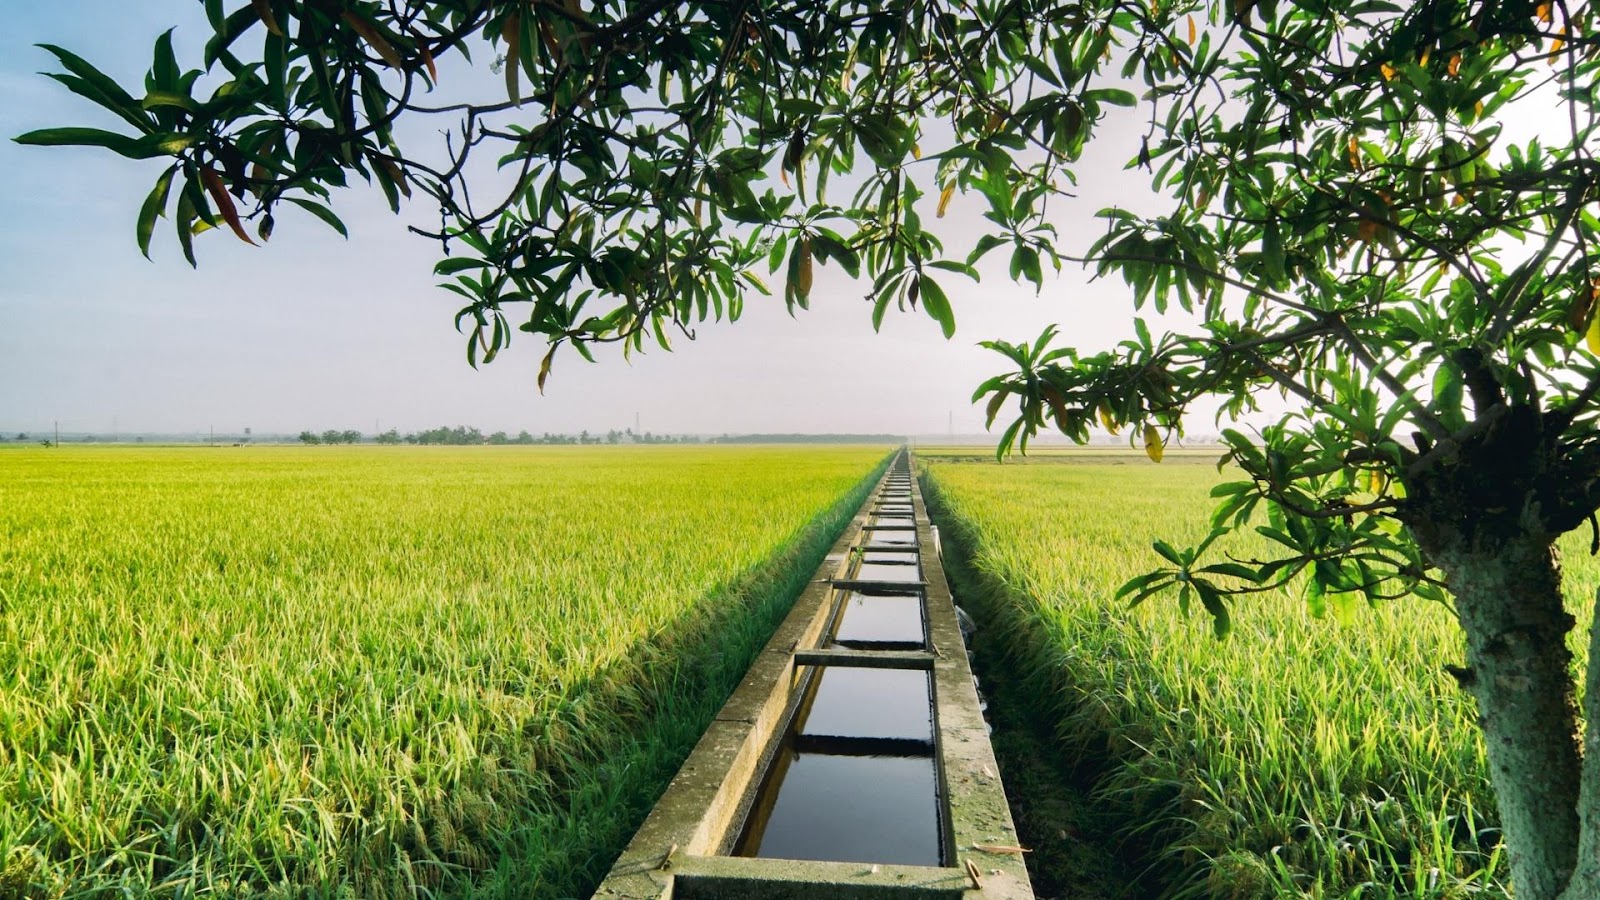 Đất trồng lúa nước còn lại là gì theo quy định?